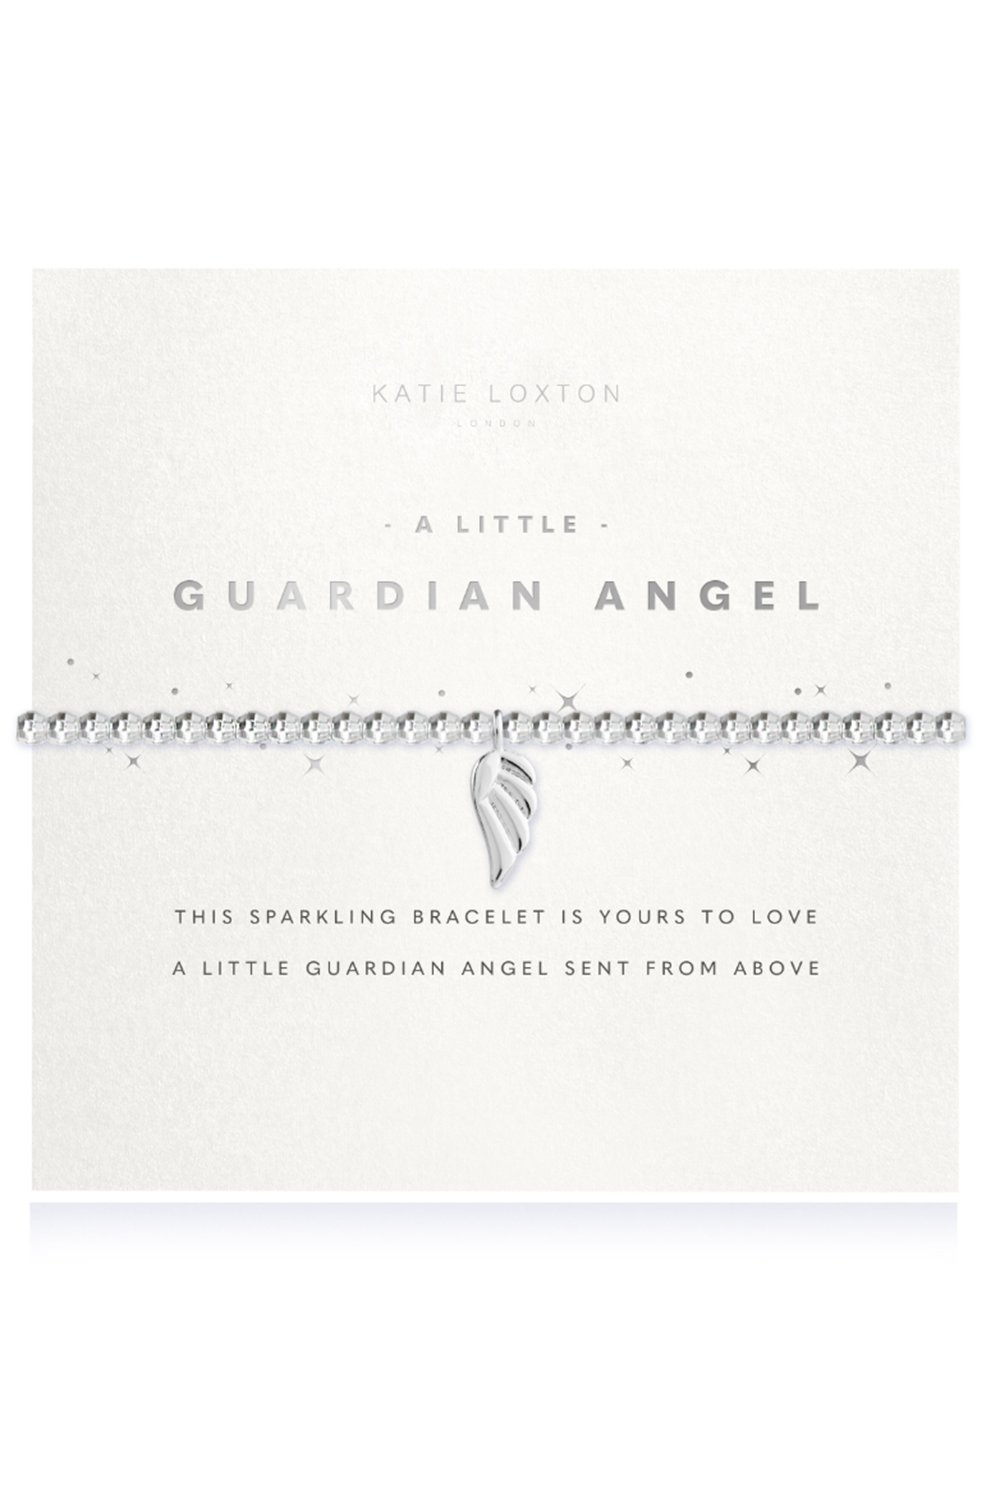 Littles Bracelet - Guardian Angel